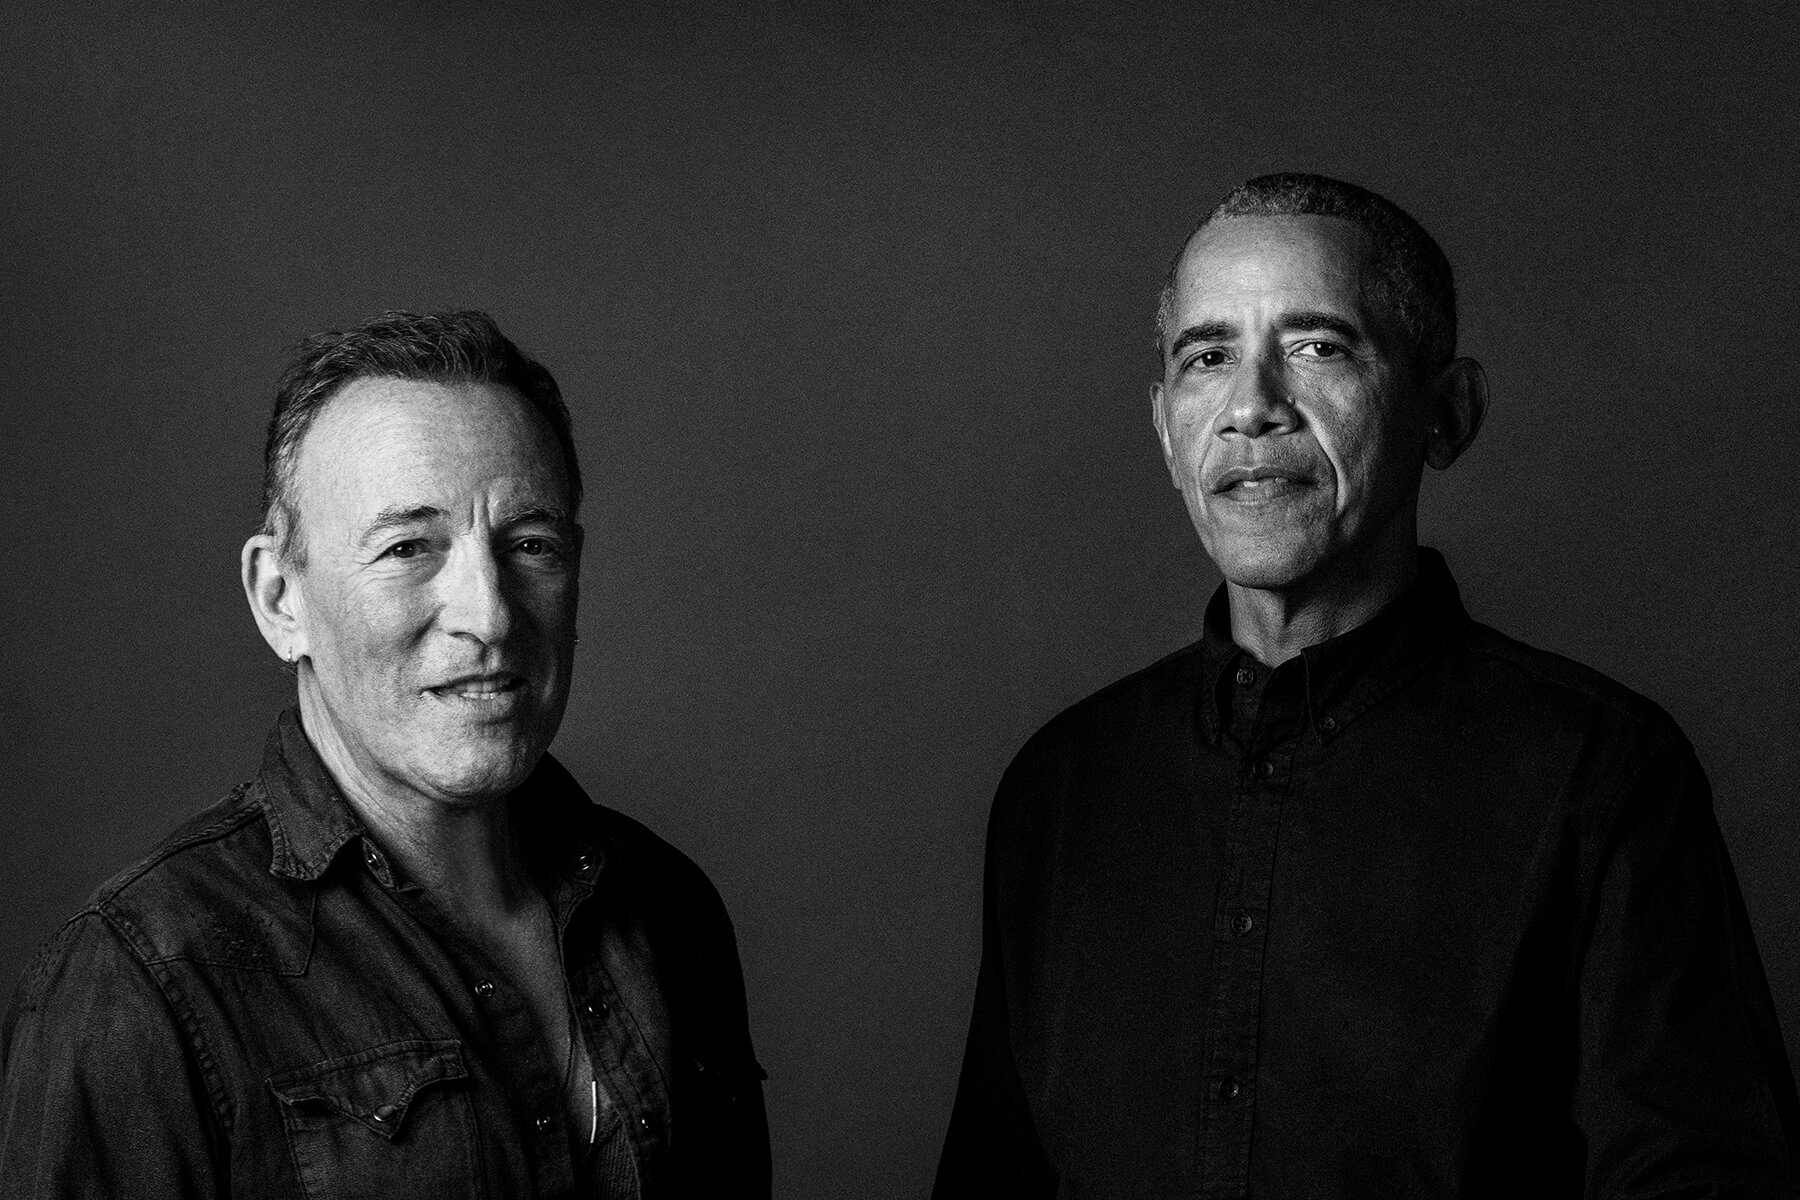 Former President Barack Obama and Bruce Springsteen standing side by side, against a dark background.